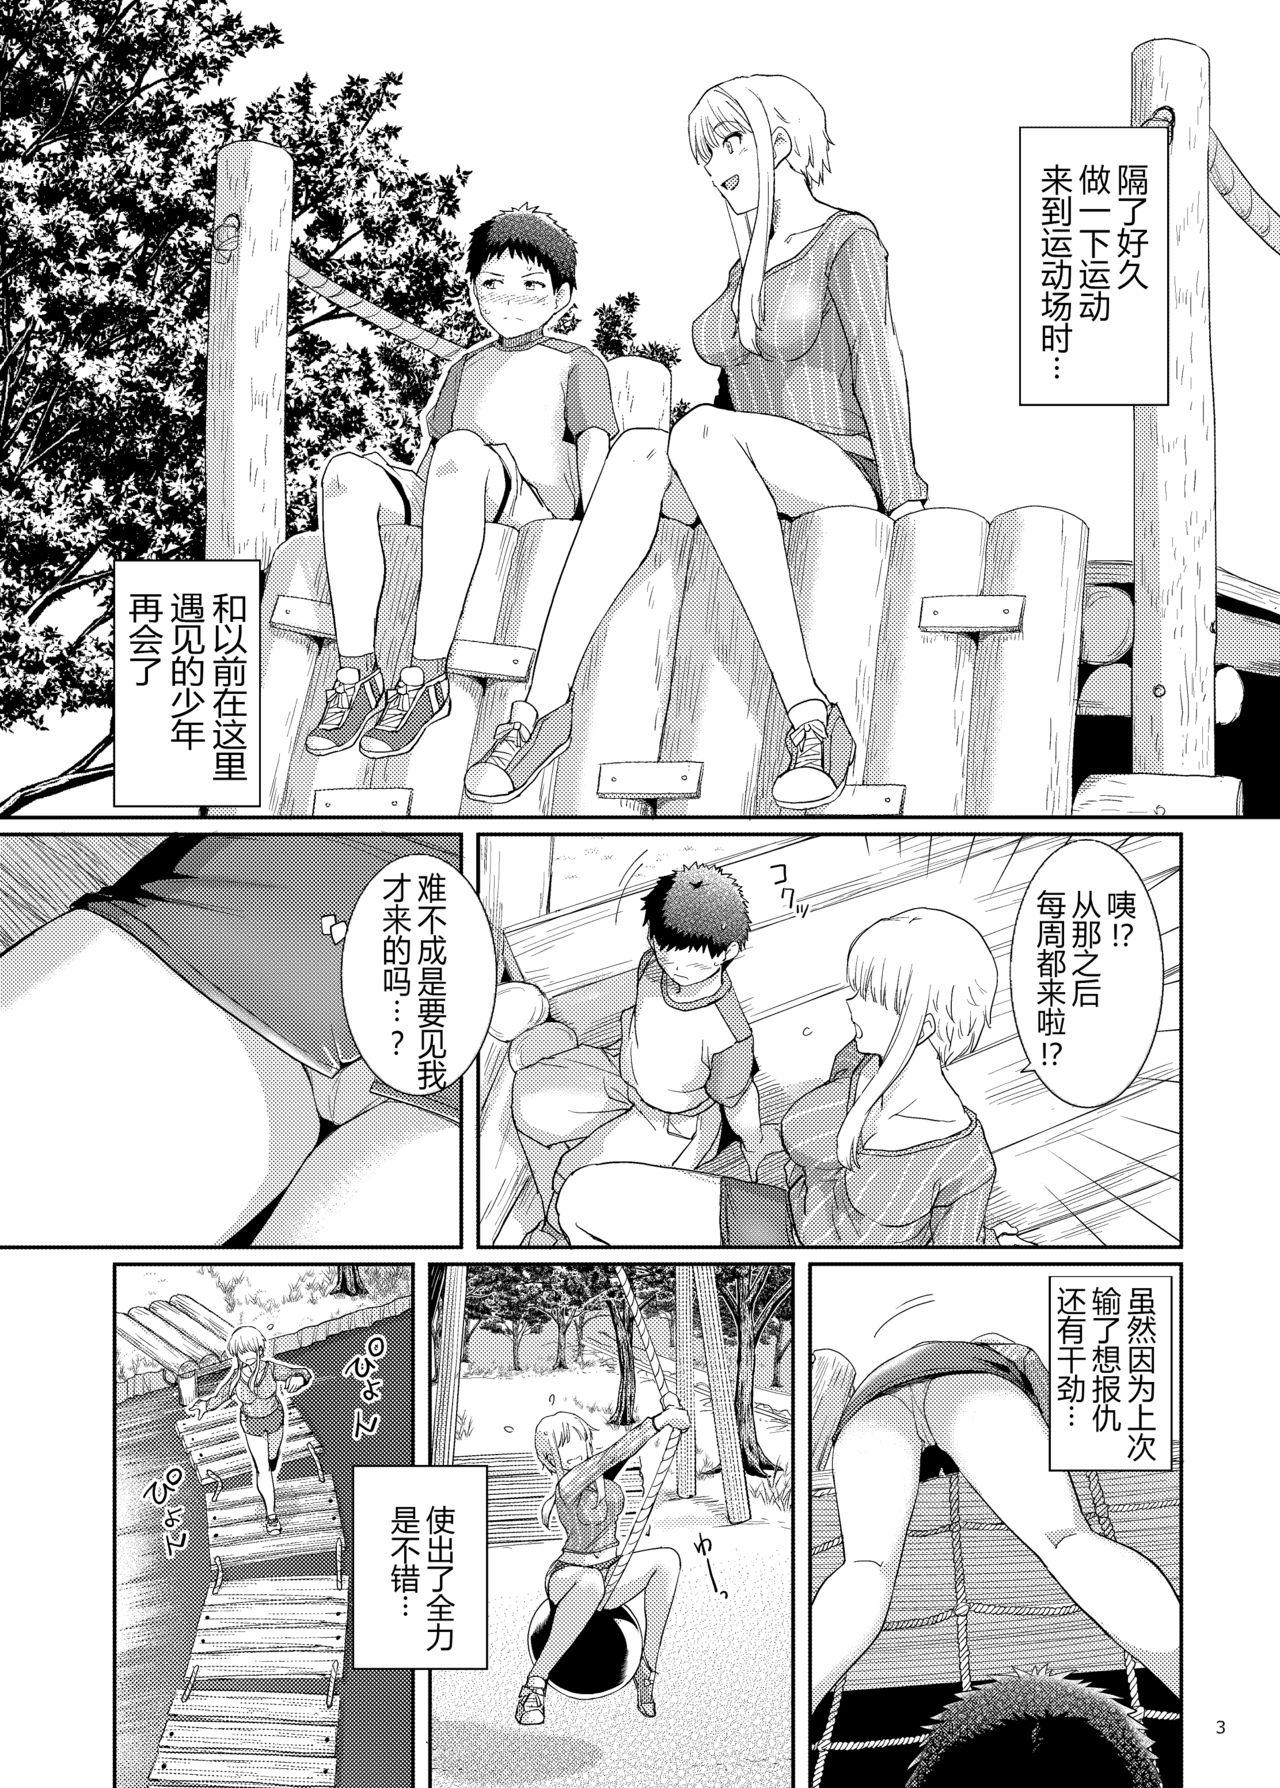 Old Man Ku-neru Sumata 6 - Ku-neru maruta 3some - Page 2